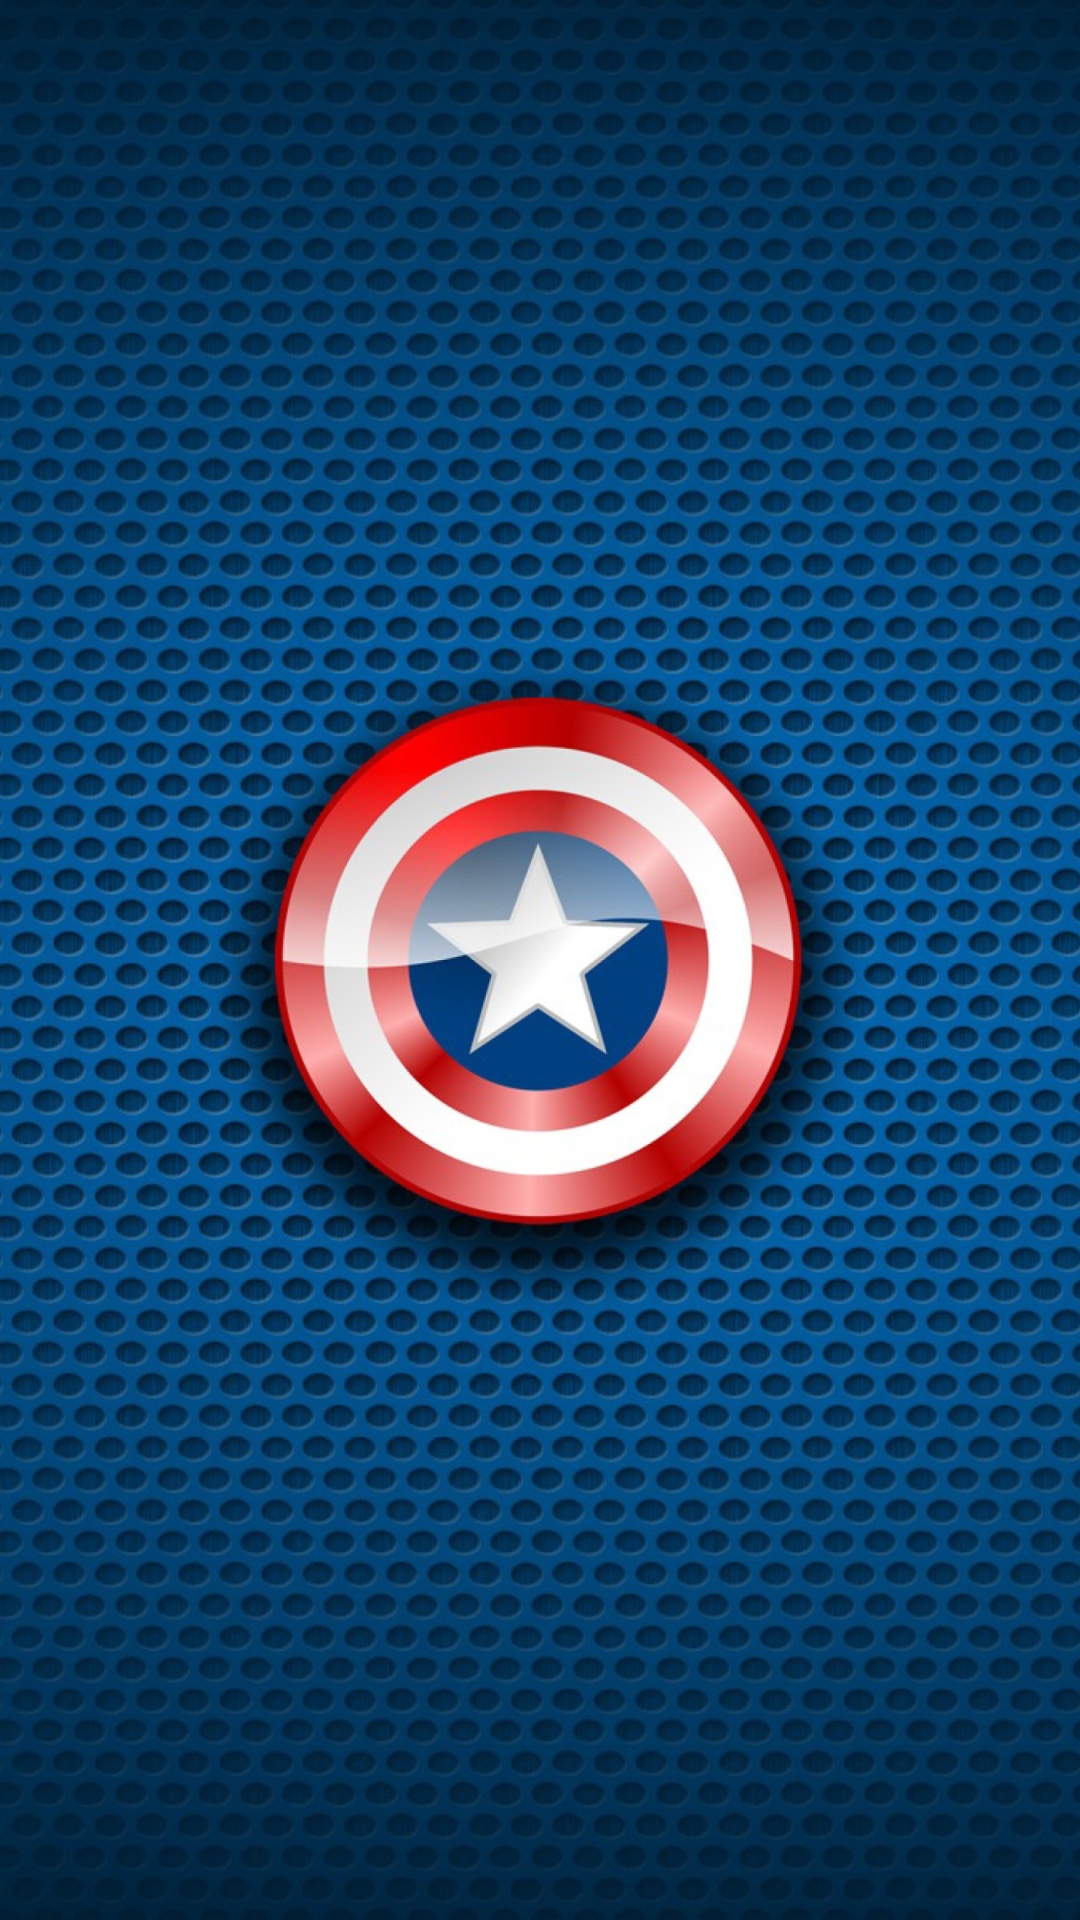 Captain America, Marvel Comics wallpaper 1080x1920